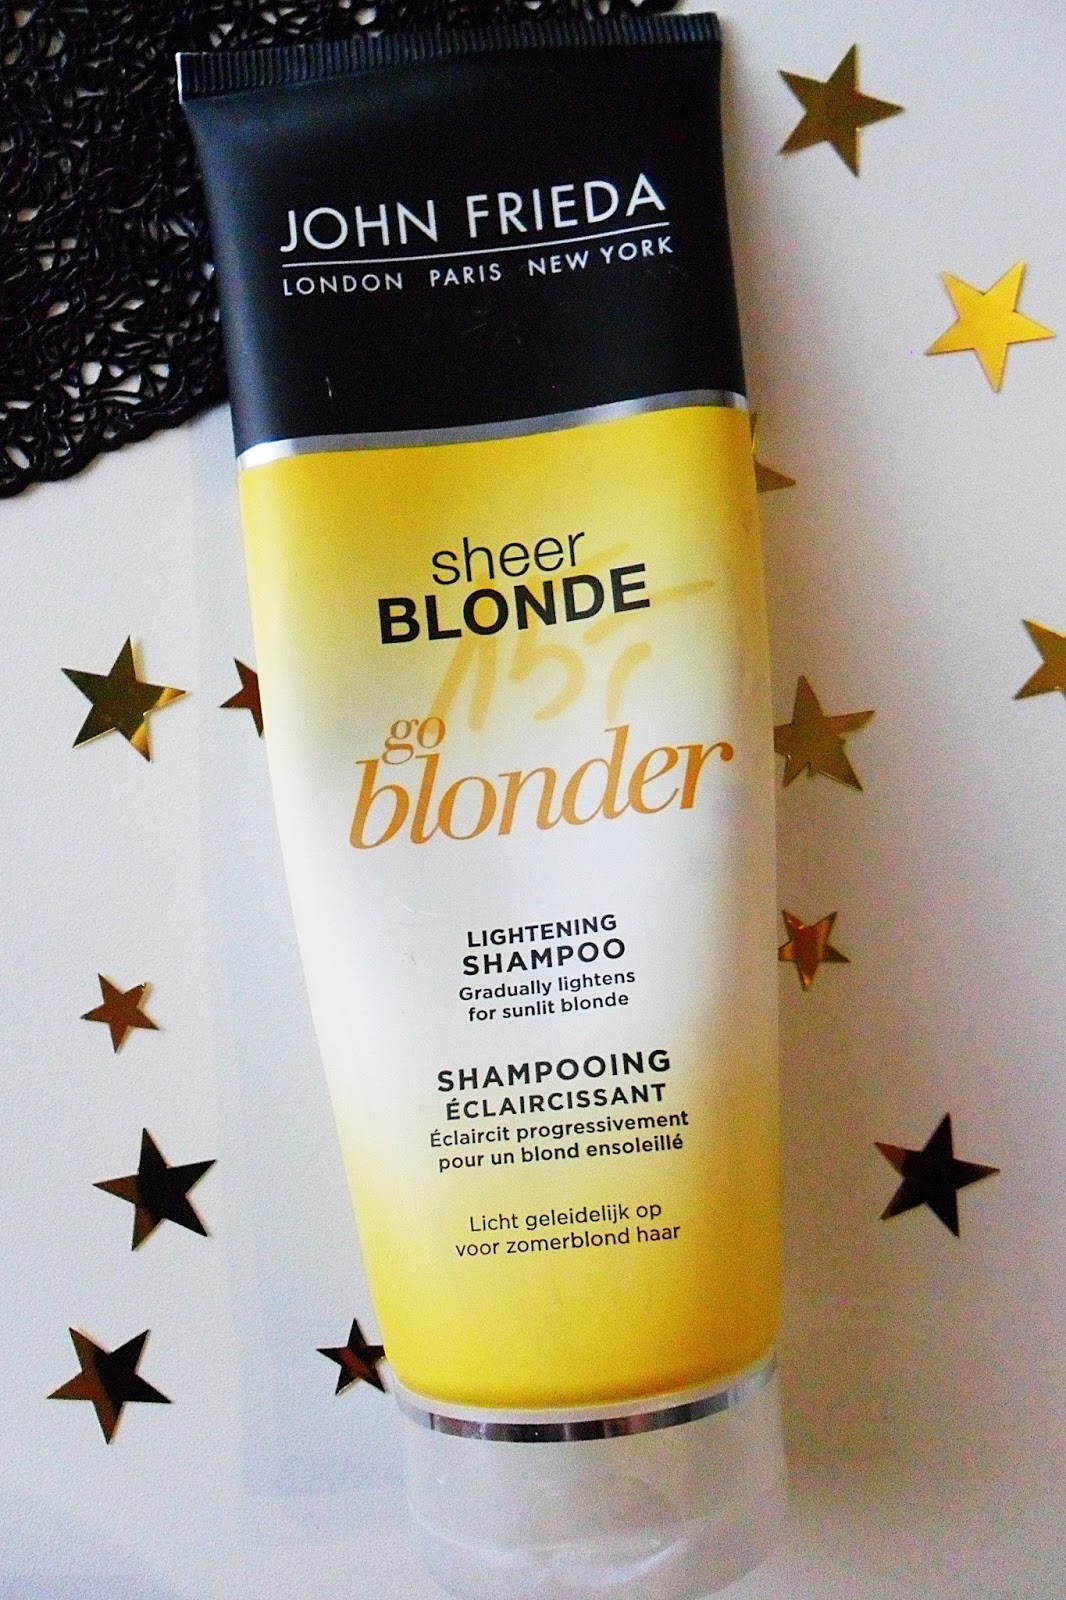 rozjaśniający szampon do włosów blond